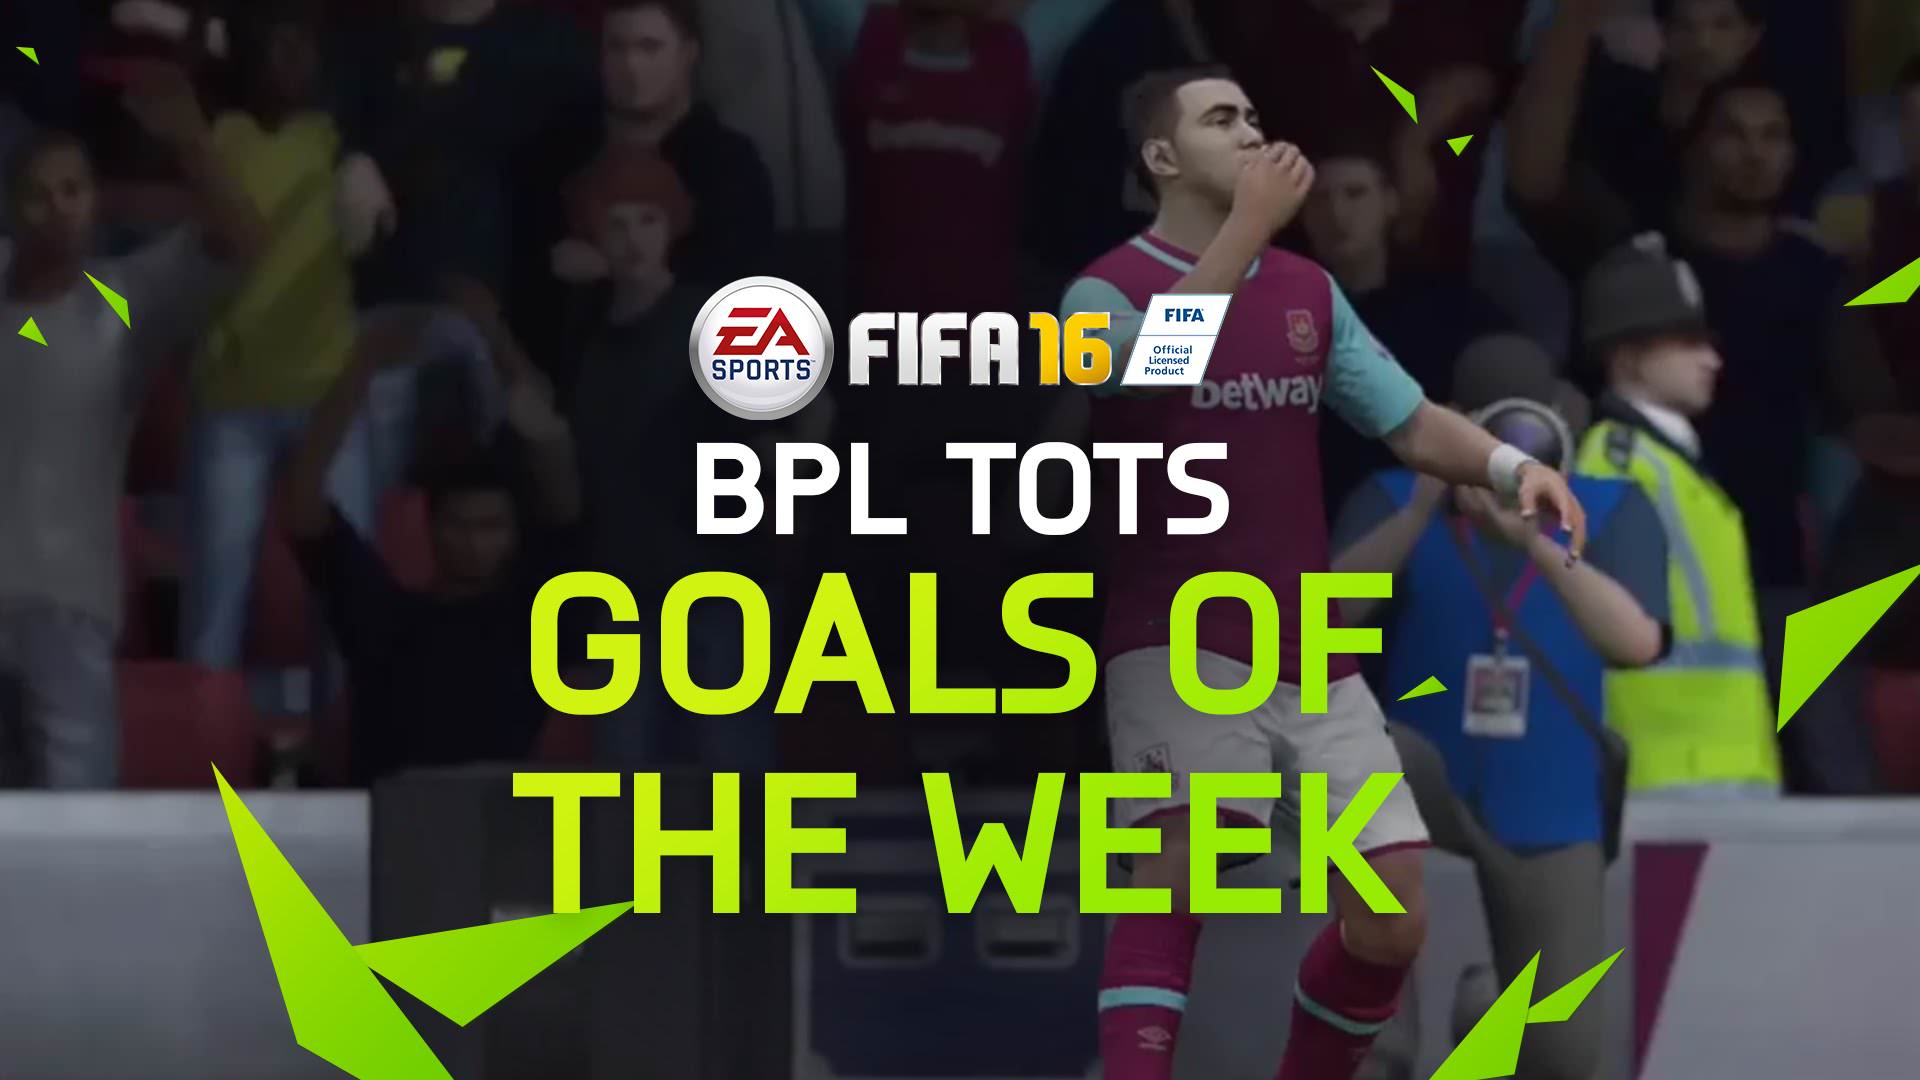 FIFA 16 Goals of the Week – BPL TOTS